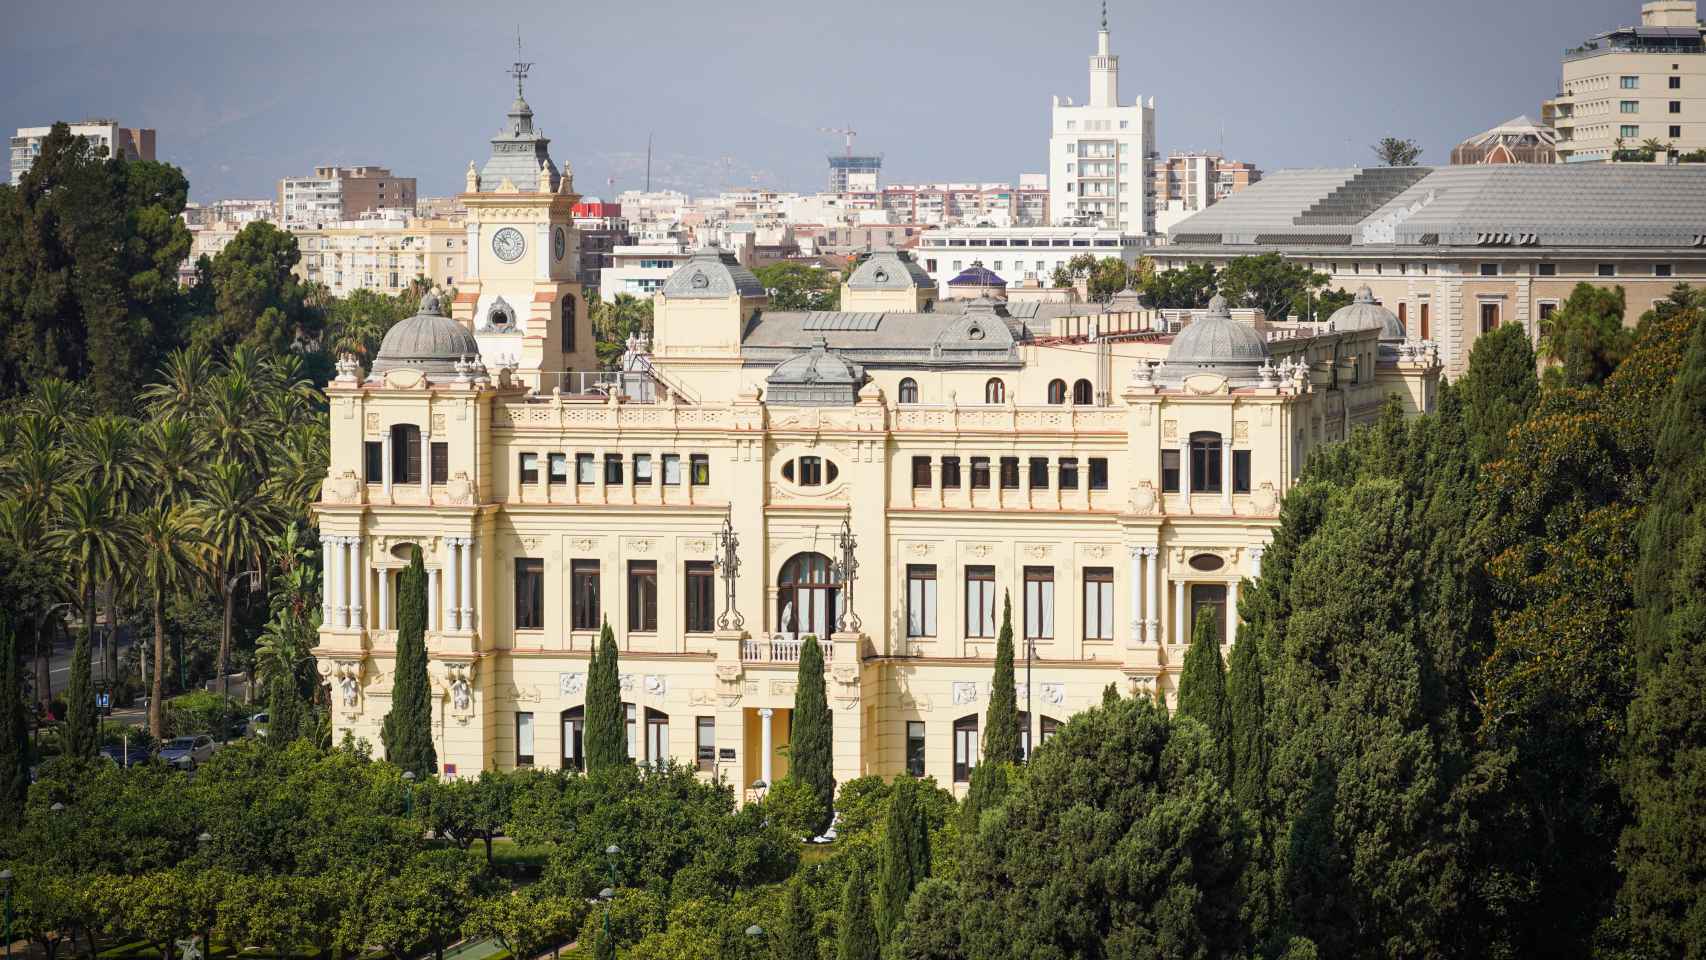 Imagen de la Casona del Parque, sede principal del Ayuntamiento de Málaga.